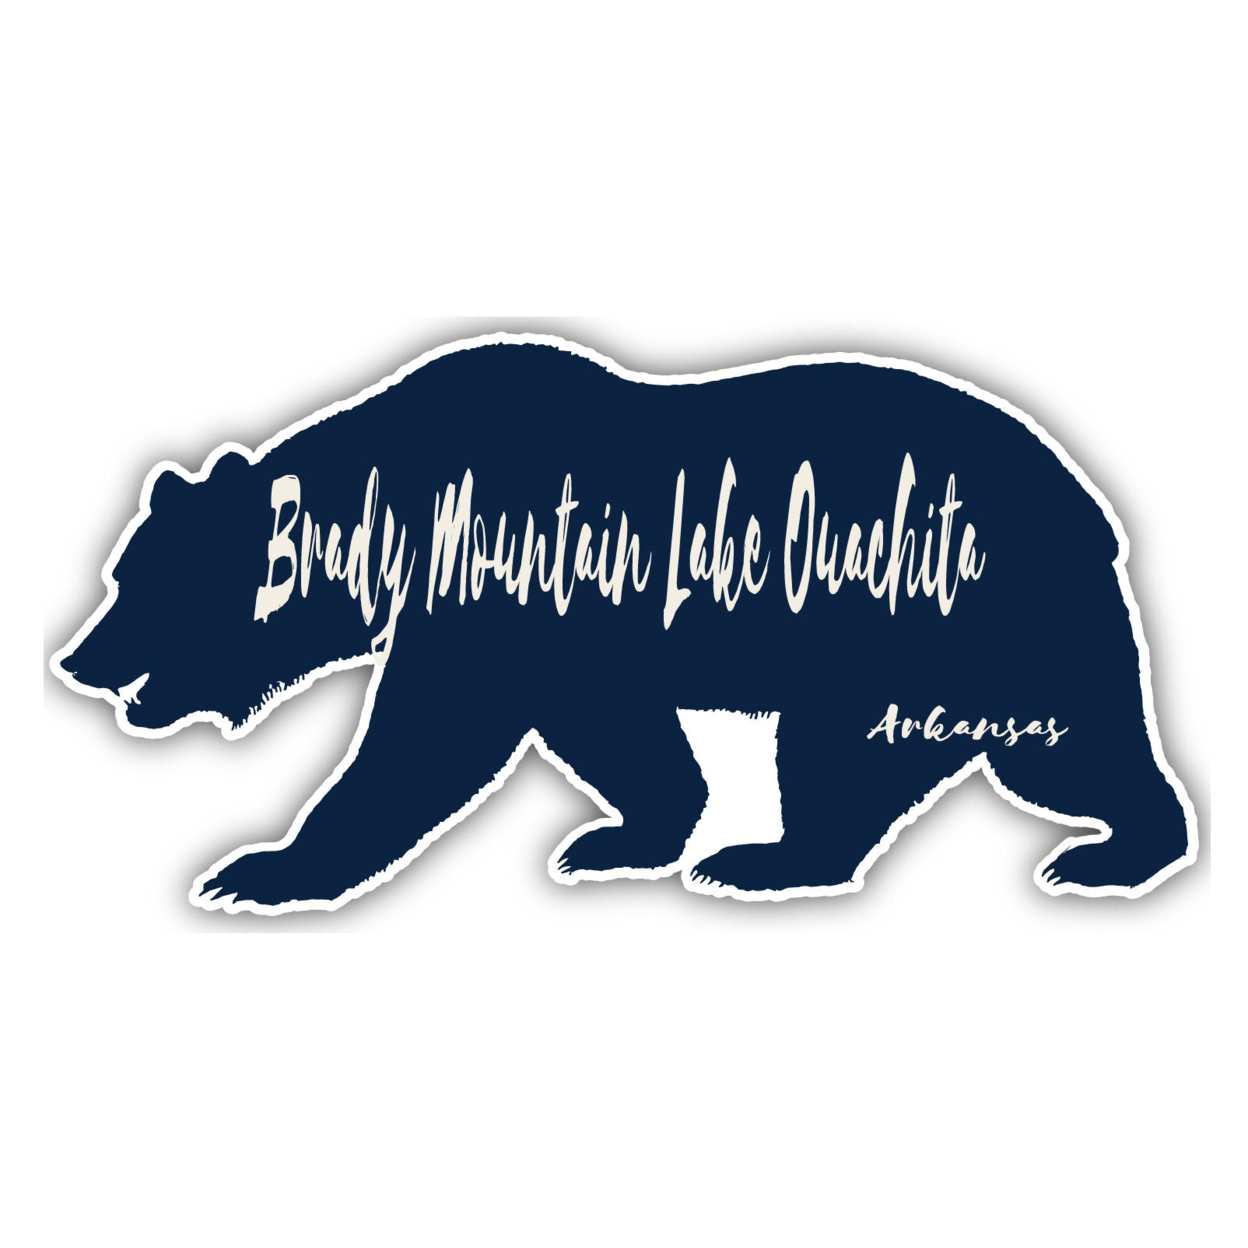 Brady Mountain Lake Ouachita Arkansas Souvenir Decorative Stickers (Choose Theme And Size) - 4-Pack, 4-Inch, Tent